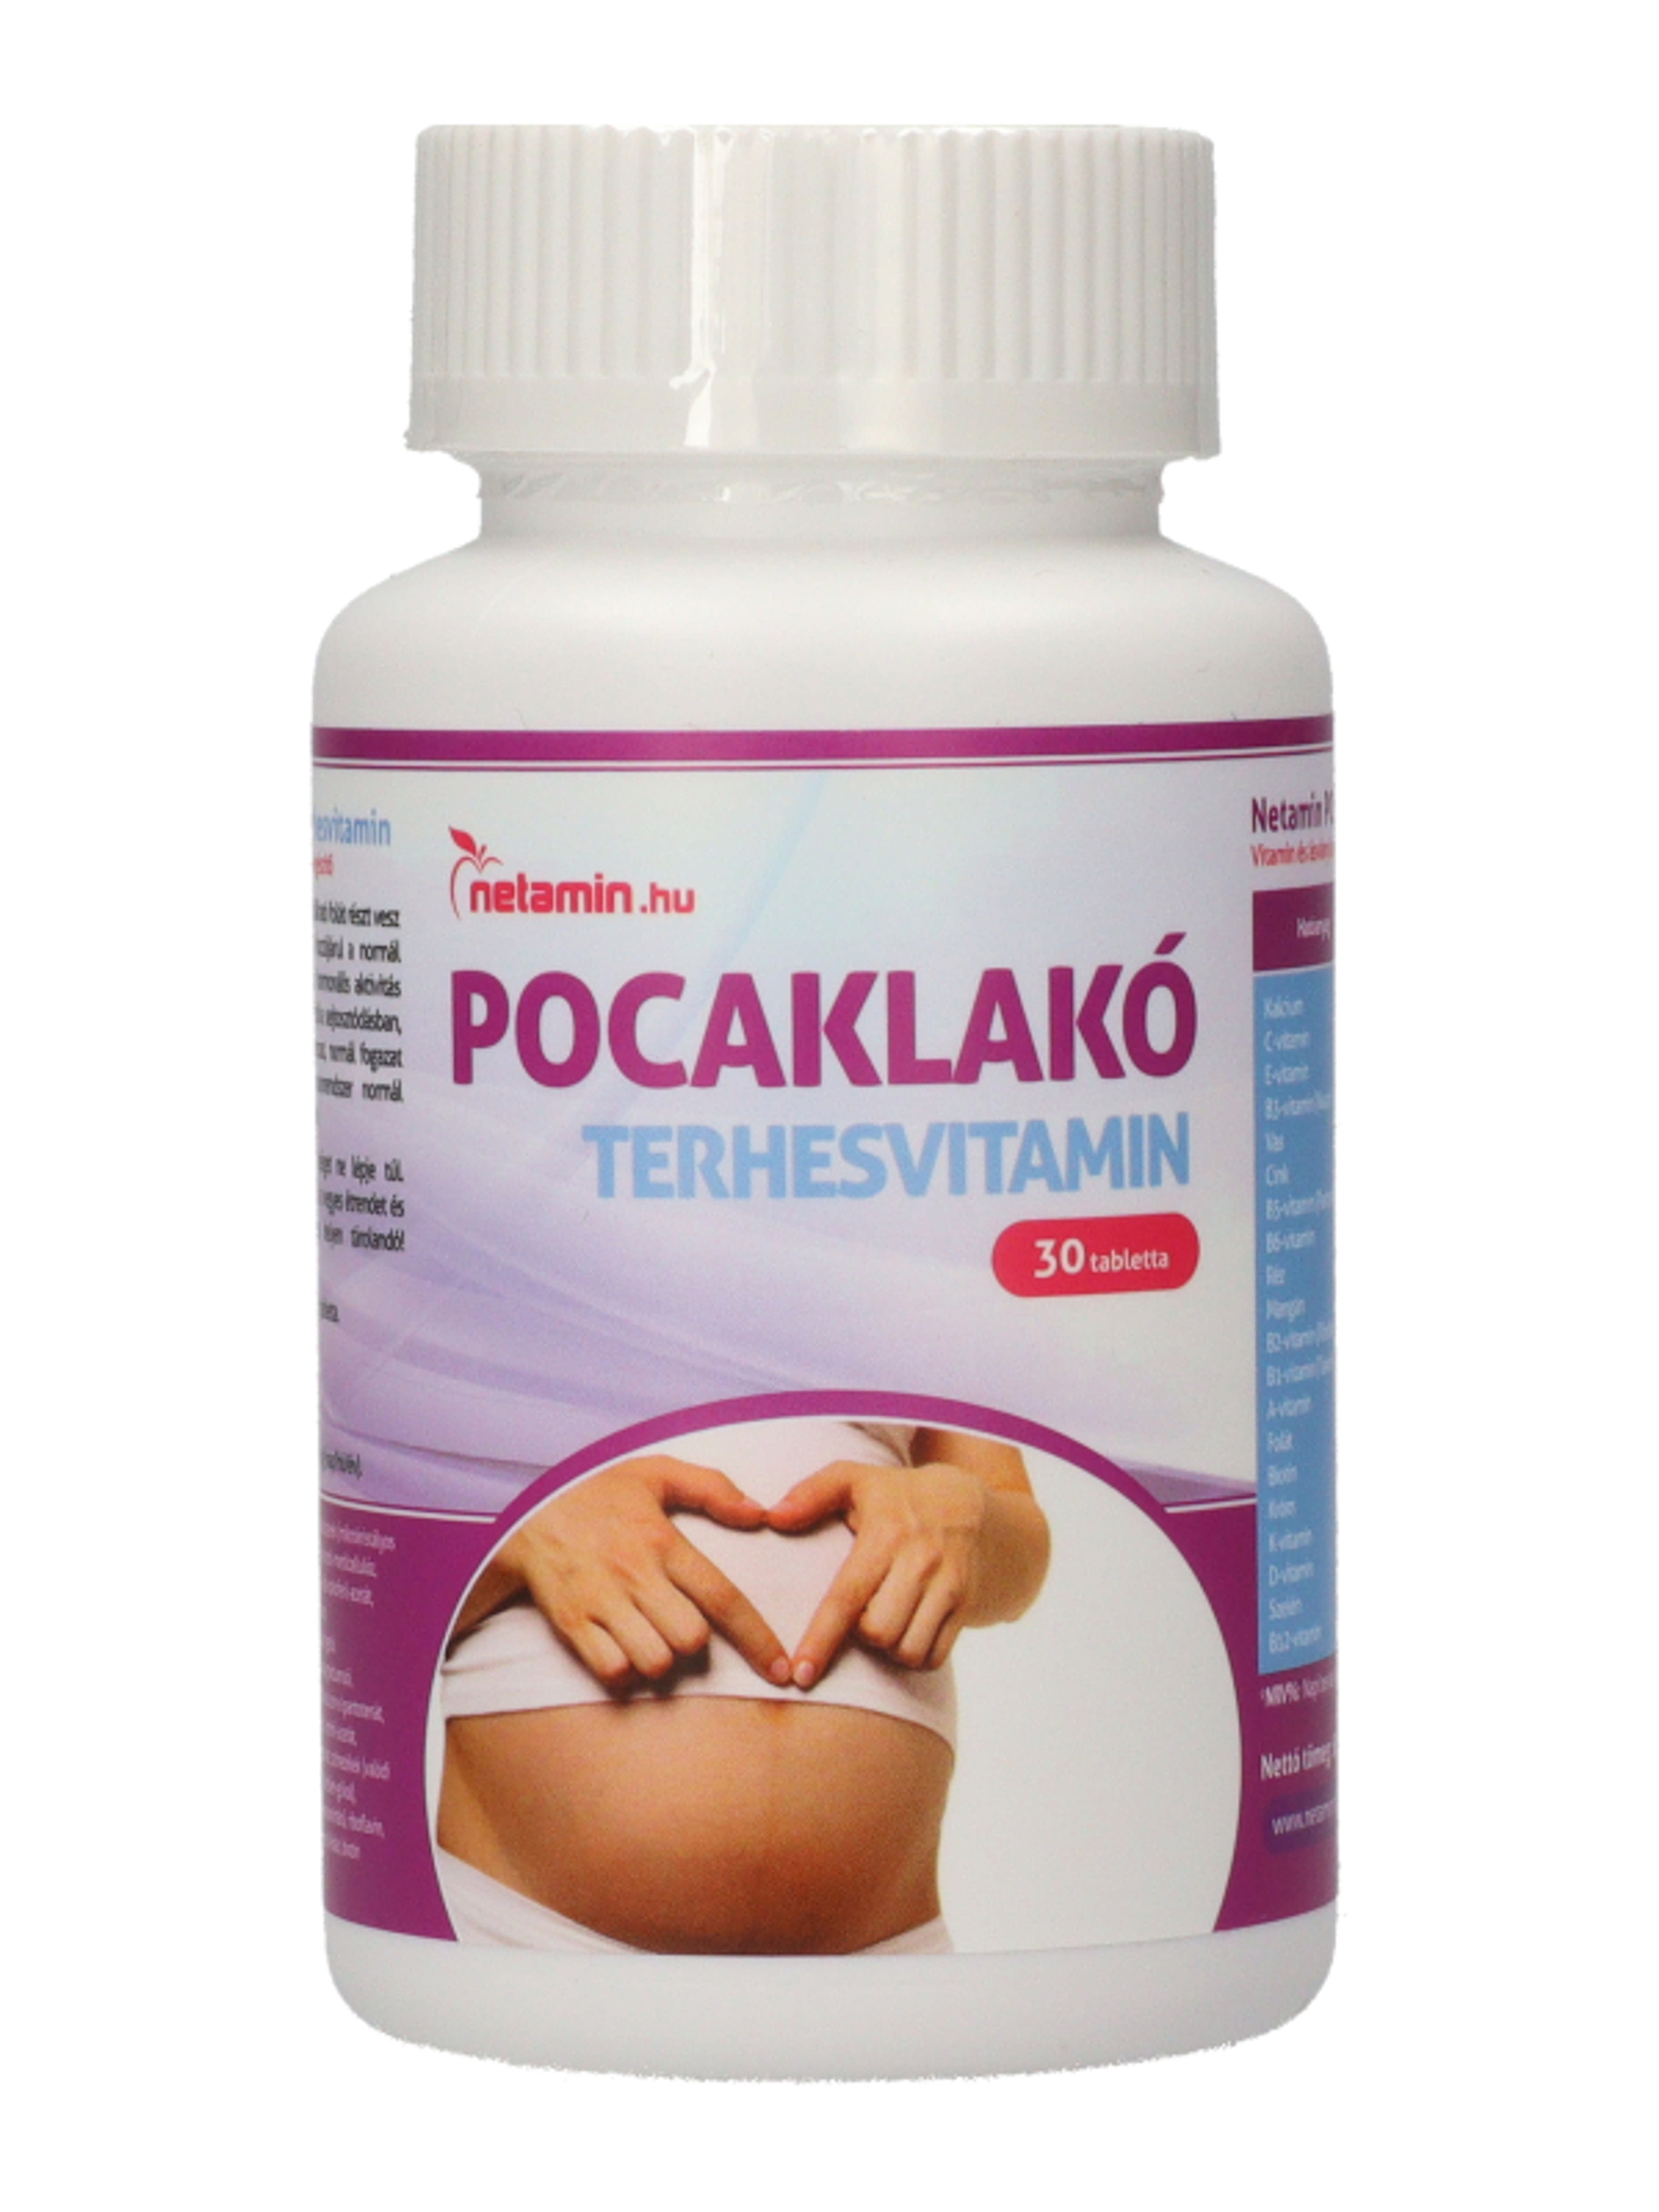 Netamin Pocaklakó terhesvitamin - 30 db